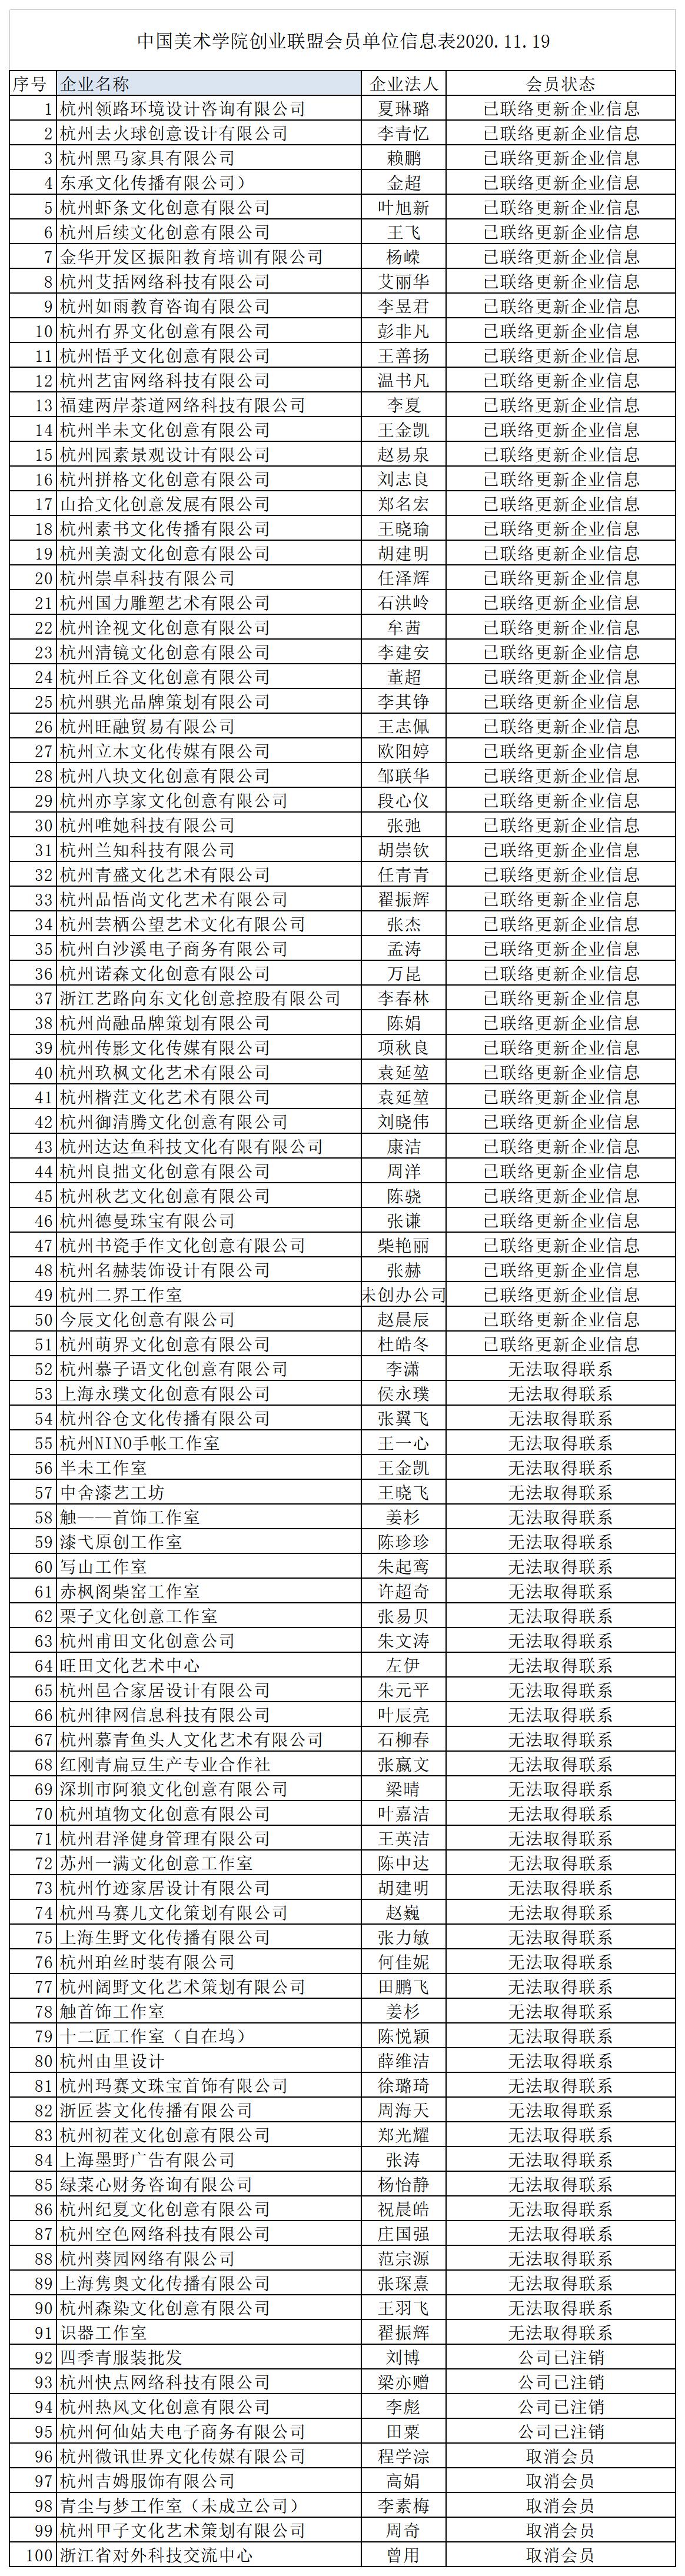 中国美术学院创业联盟会员名单更新  1.jpg